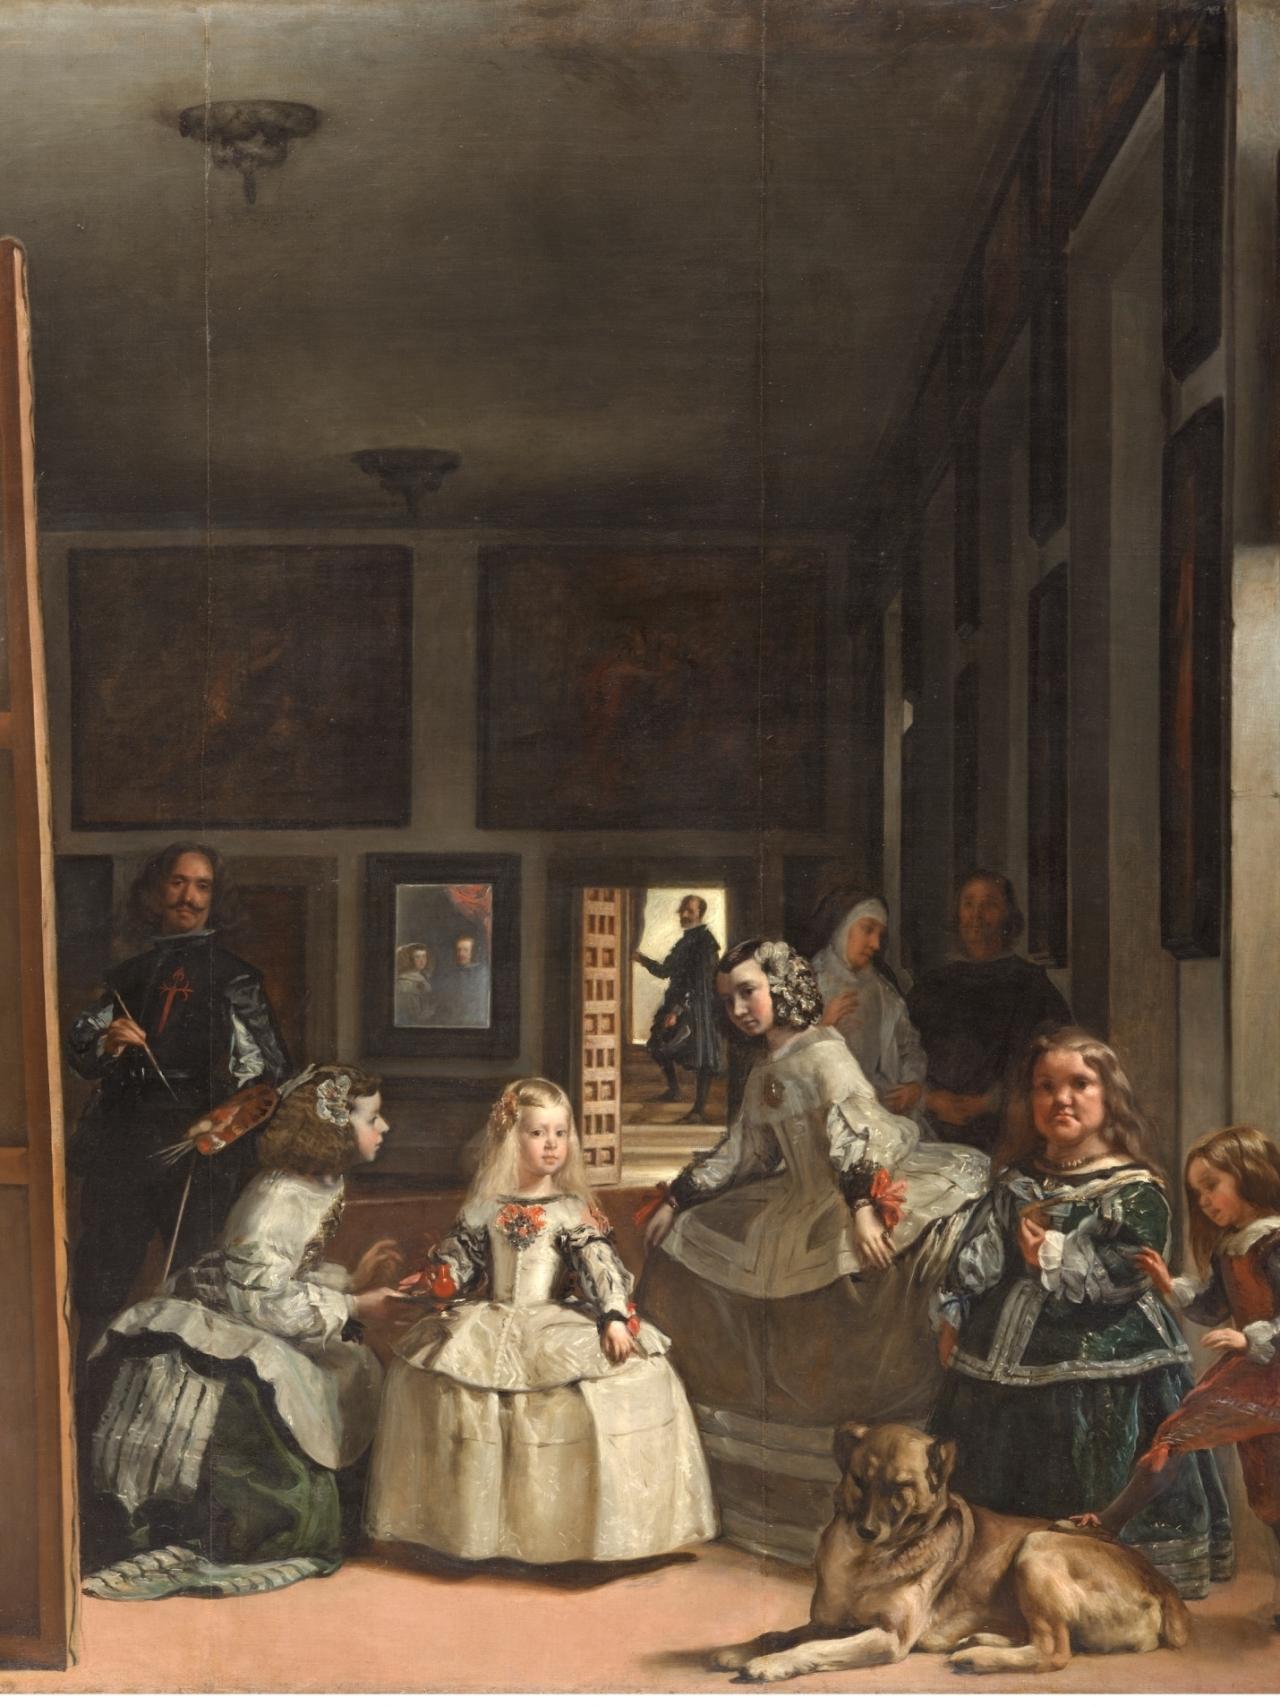 200 años Museo del Prado: De 'Las meninas' a 'La maja desnuda': el género  del retrato en los 200 mejores cuadros del Prado (III)